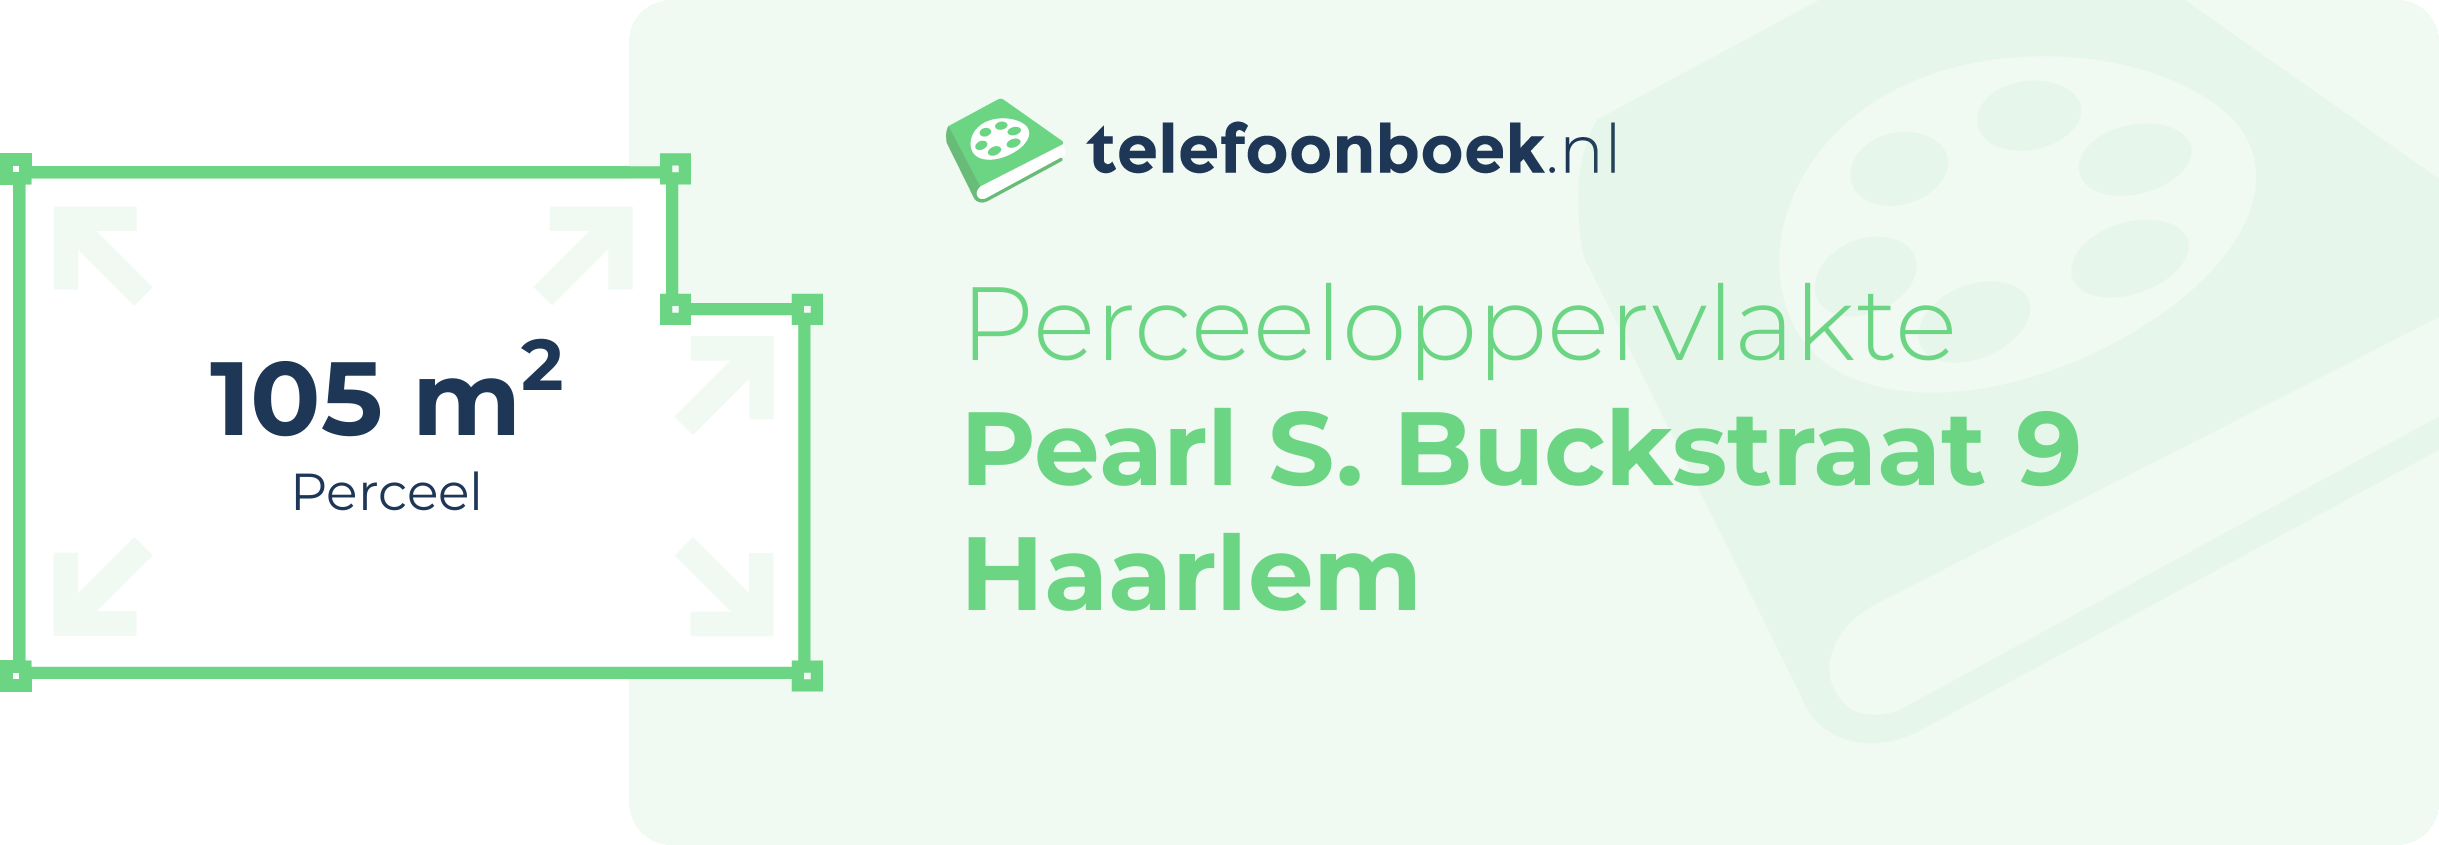 Perceeloppervlakte Pearl S. Buckstraat 9 Haarlem